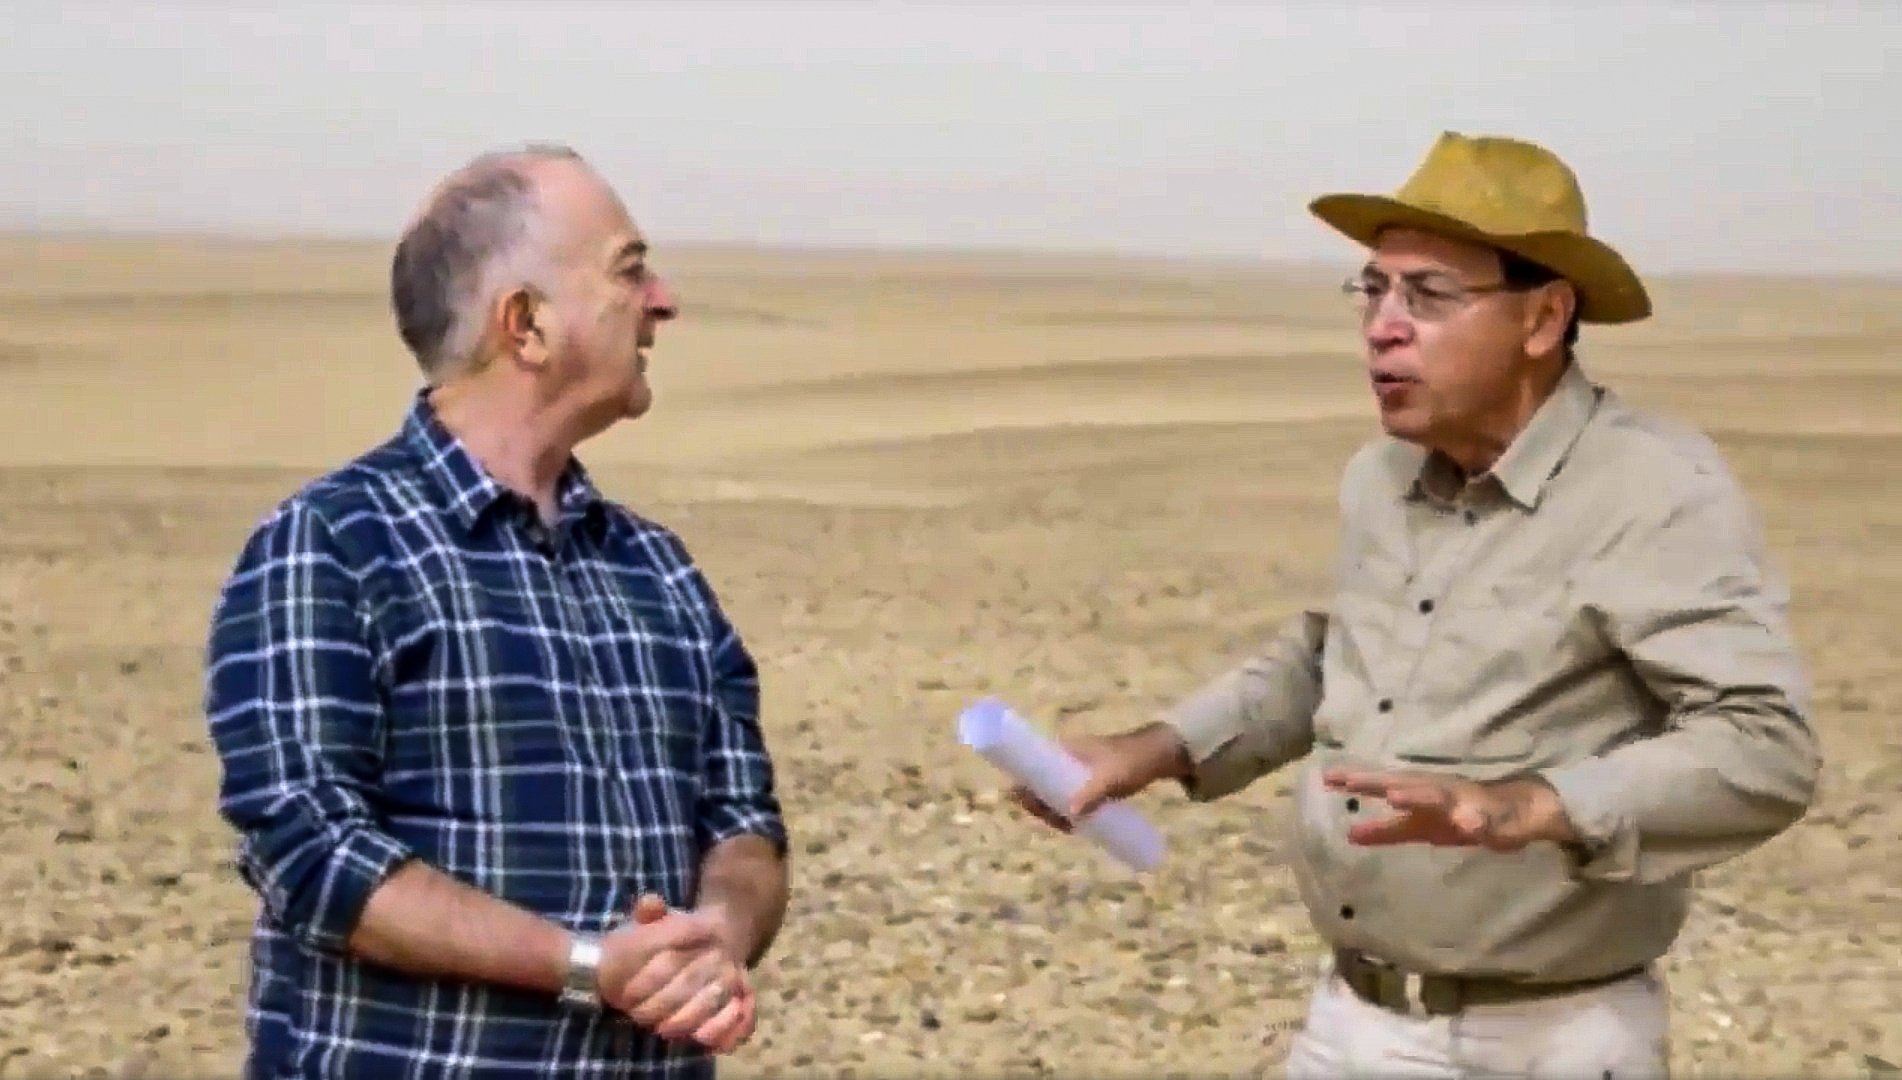 Dr. Dobrev explains to Tony Robinson the location in Saqqara